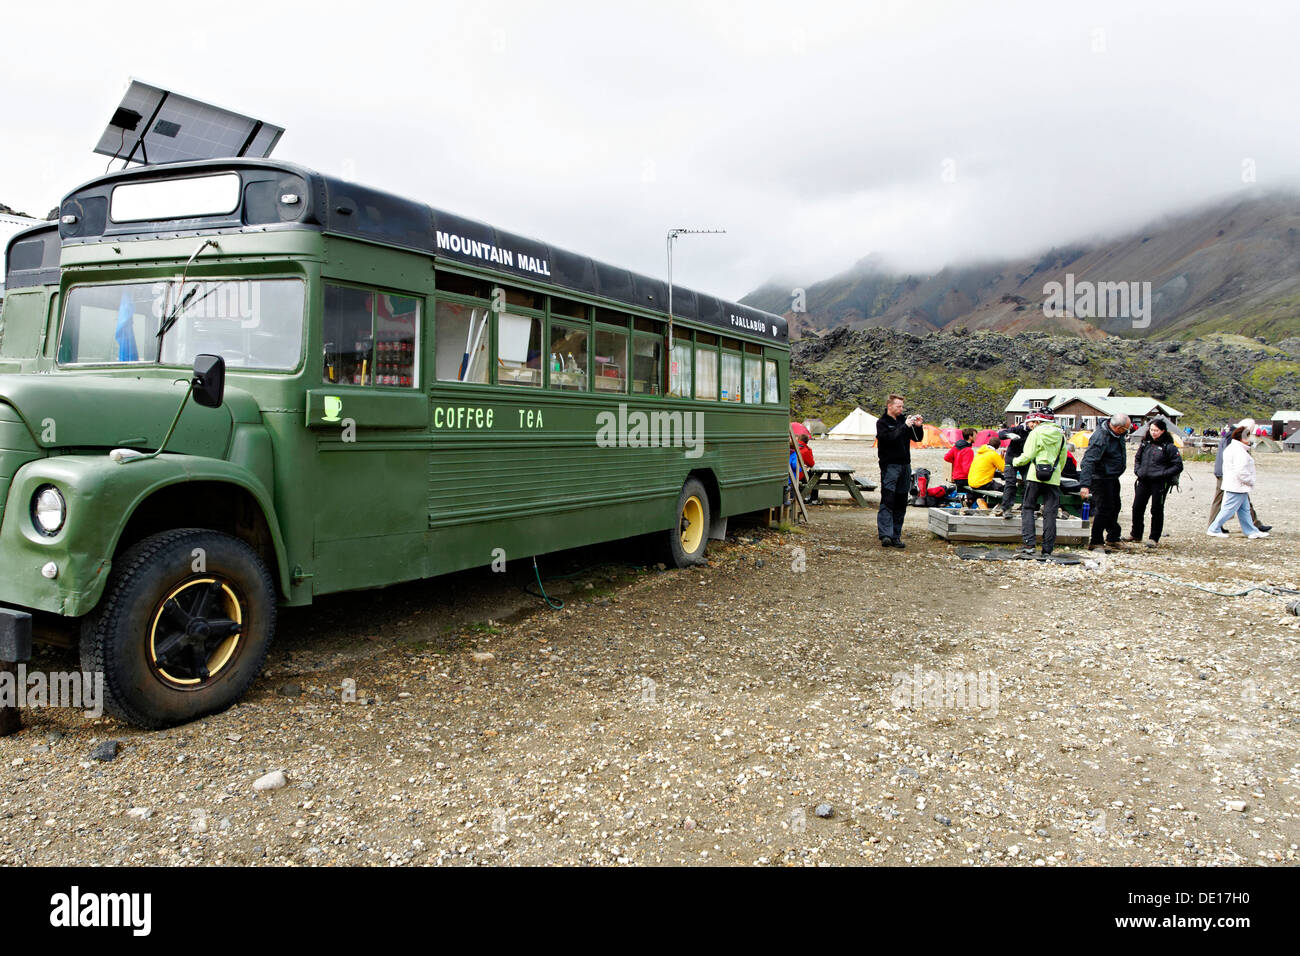 Terrain de camping et mobile d'un plateau thé/café, bus Landmannalaugar Islande Banque D'Images